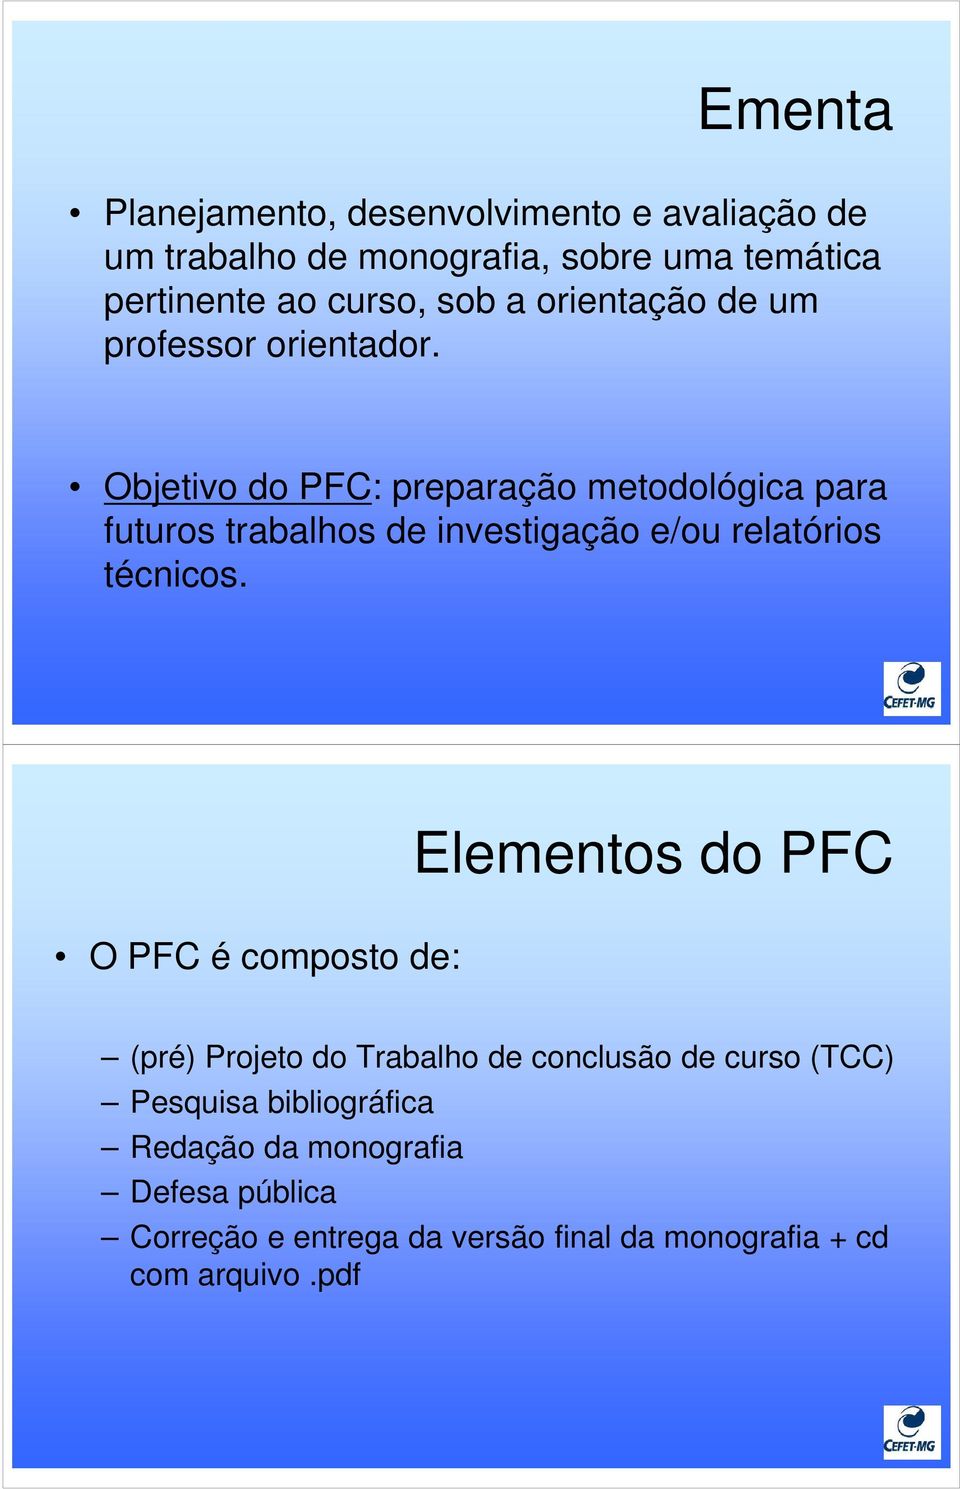 Objetivo do PFC: preparação metodológica para futuros trabalhos de investigação e/ou relatórios técnicos.